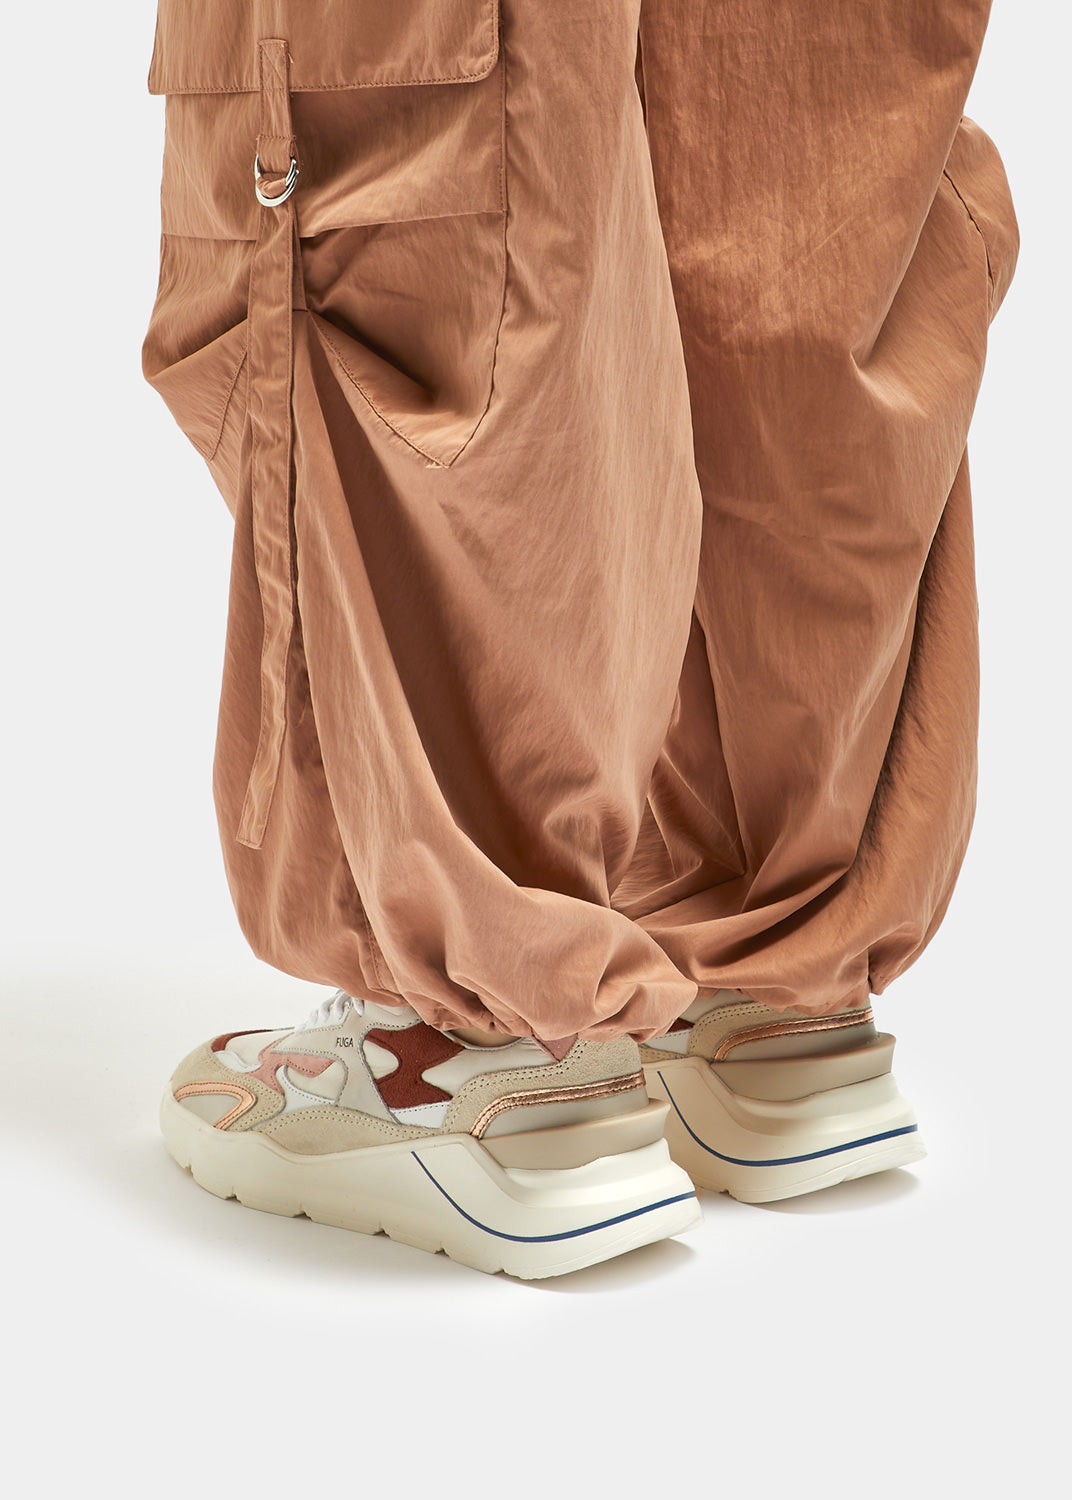 Sneaker in Nylon con Inserti in Suede e Pelle Fuga Nylon / Beige - Ideal Moda